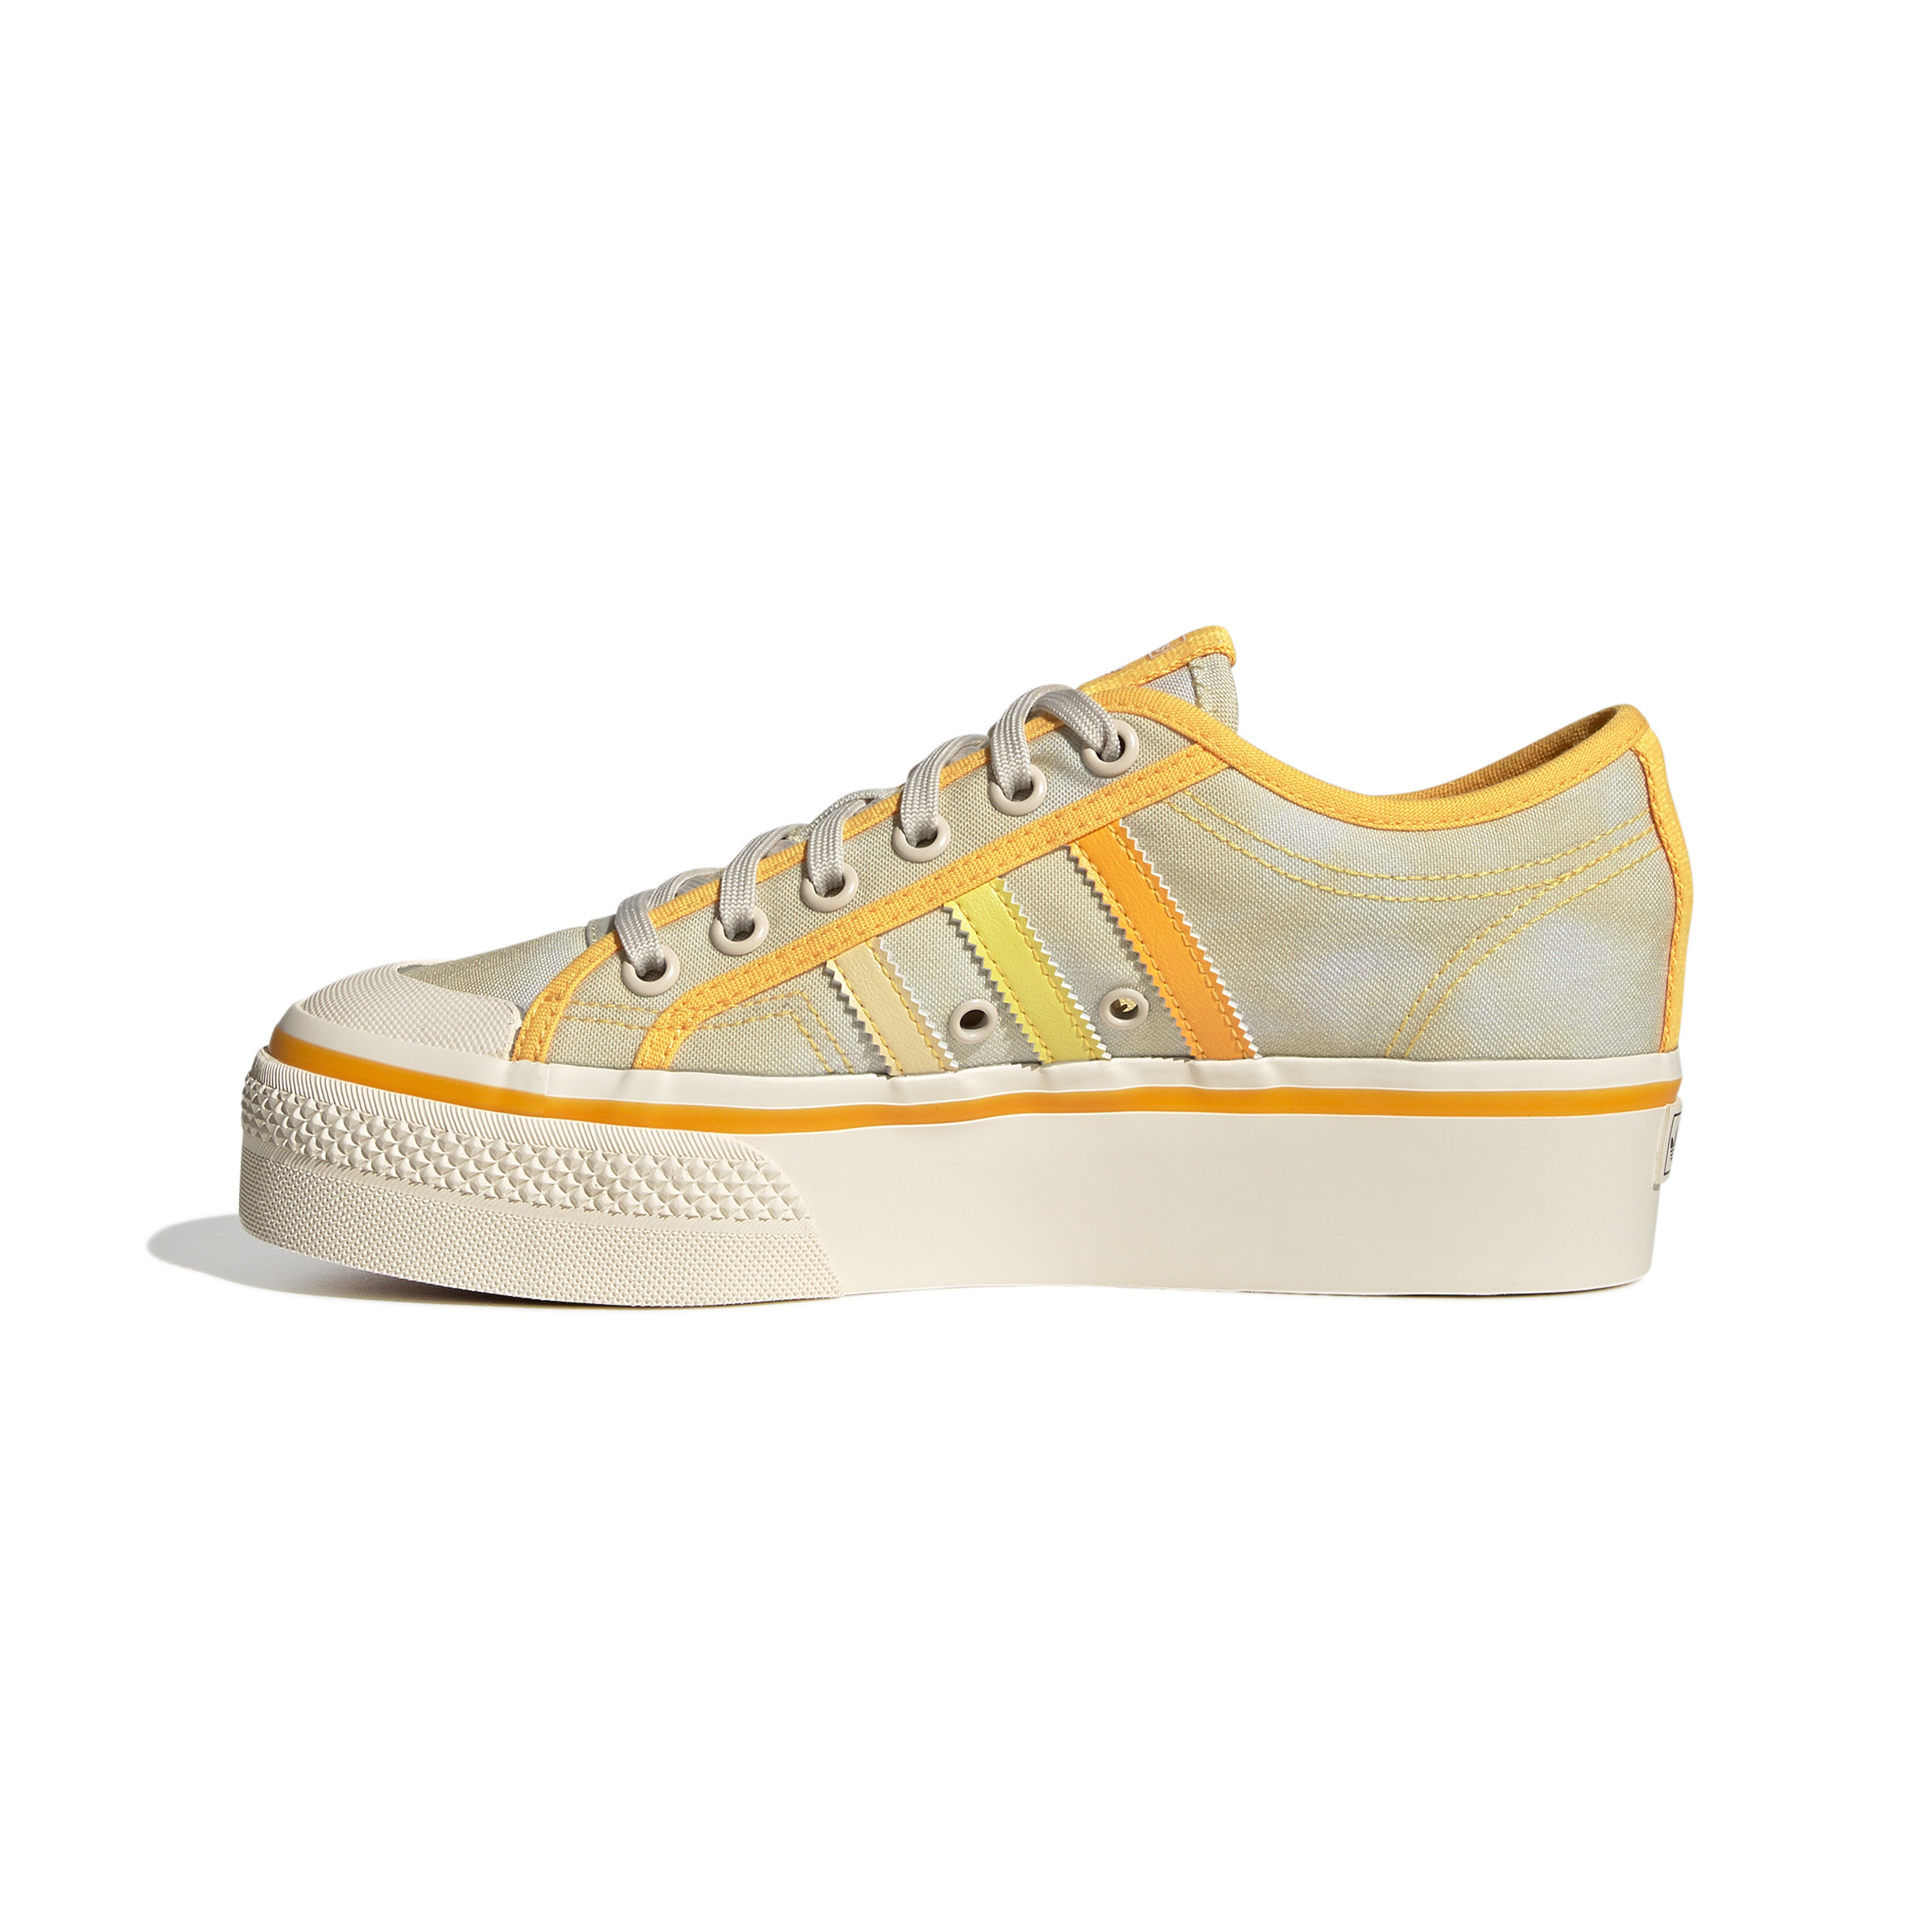 Adidas - Nizza Platform Shoes, Yellow, large image number 3